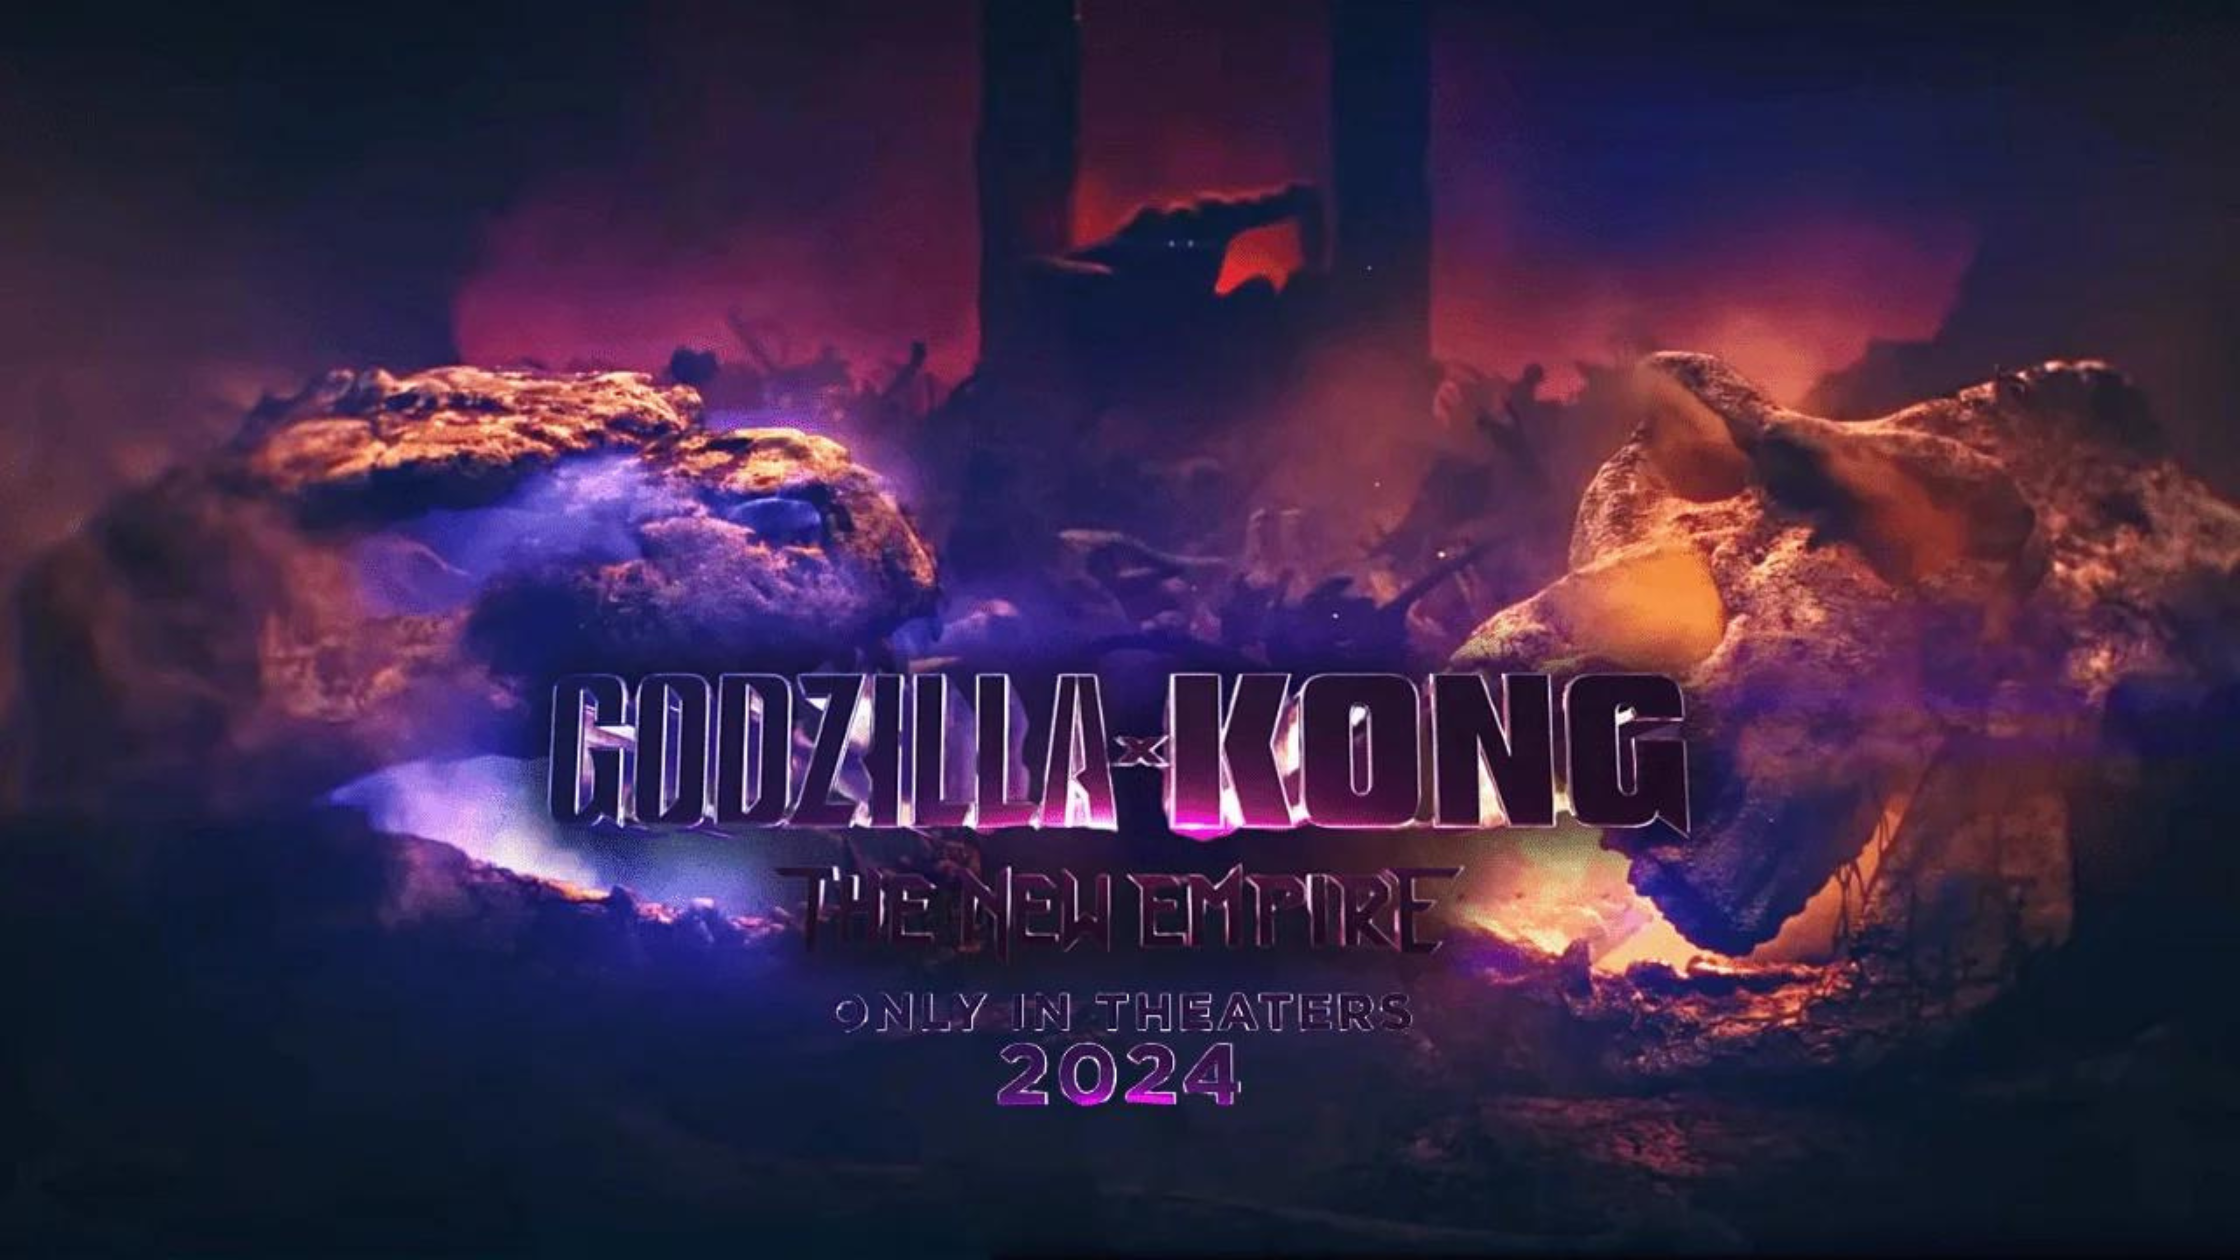 Godzilla x kong the new empire